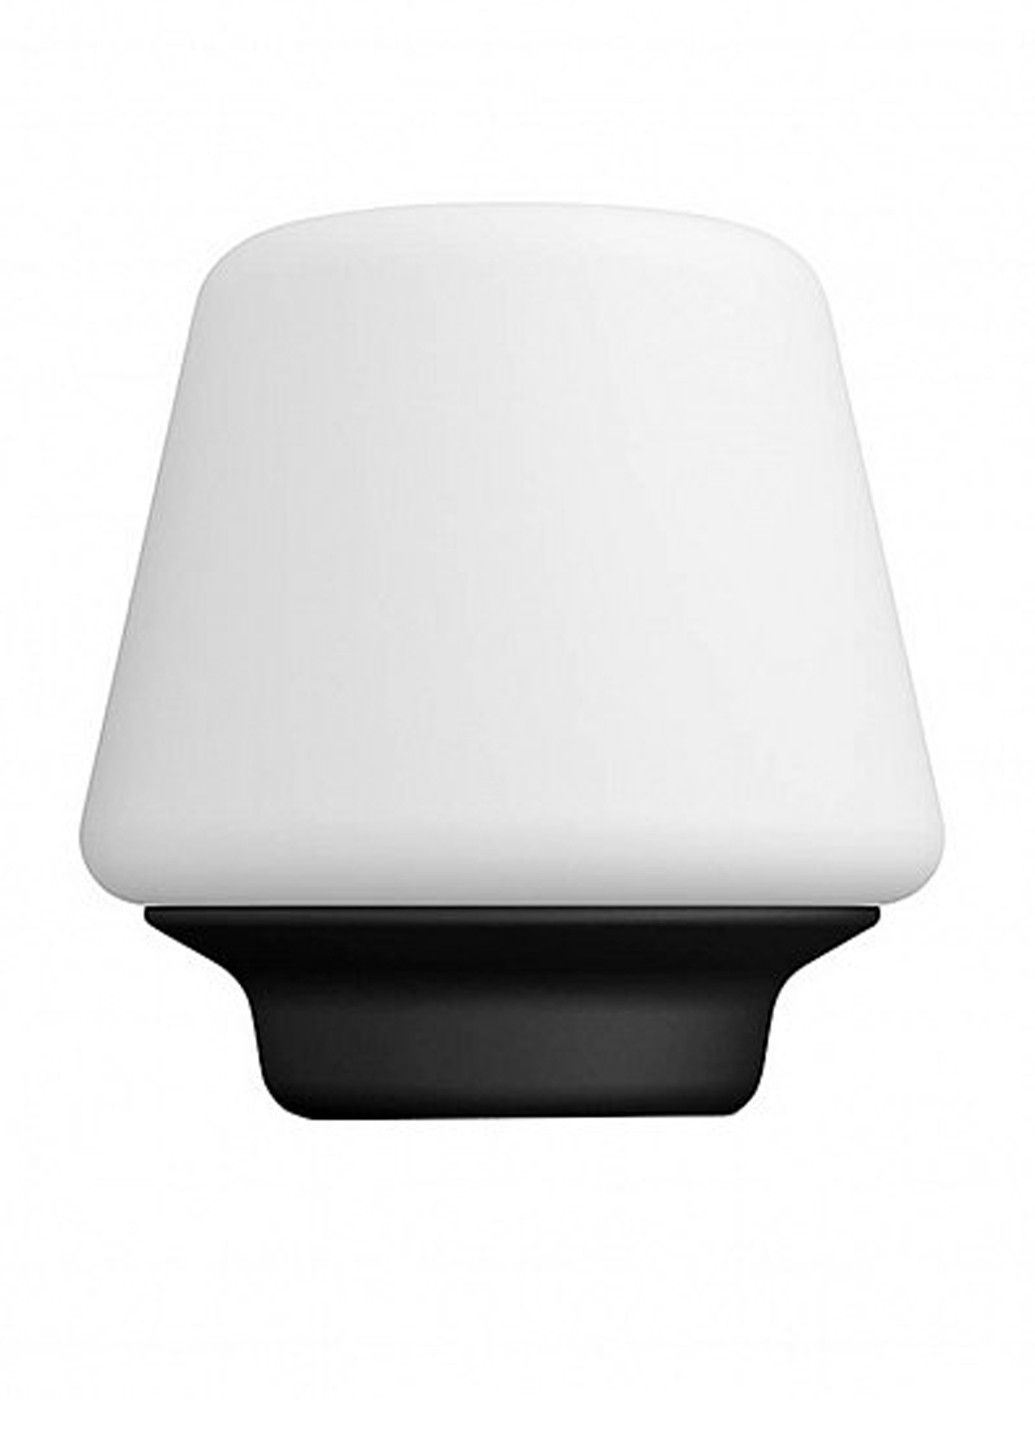 Настольная лампа Wellness Hue table lamp black 1x9.5W (40801/30/P7) Philips настольная wellness hue table lamp black 1x9.5w (40801/30/p7) (142289721)